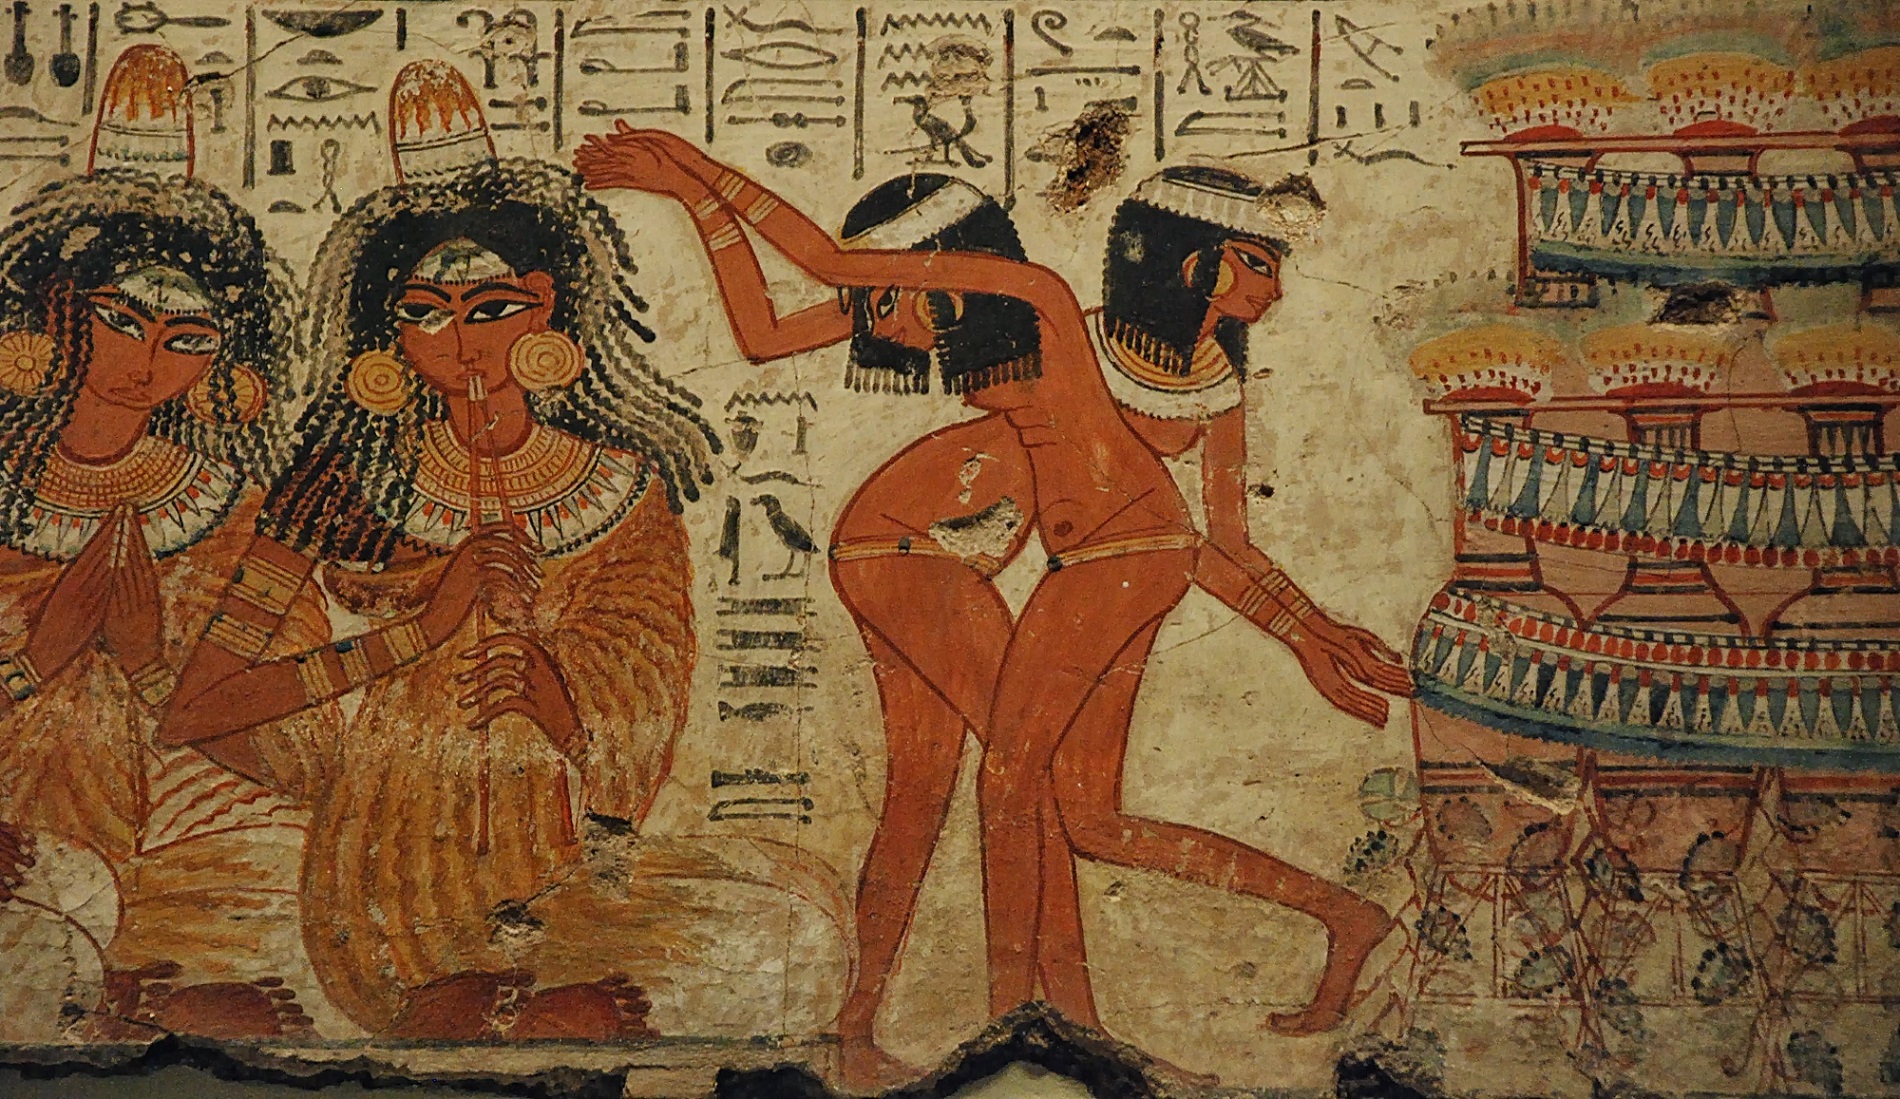 Египтяне все знали про секс: какой была сексуальная жизнь в Древнем Египте жизнь, который, истории, Осириса, египтяне, жизни, когда, секса, фараона, своих, фараонов, перед, богов, этого, Исиды, Тутанхамона, Египта, рассказывает, время, первый